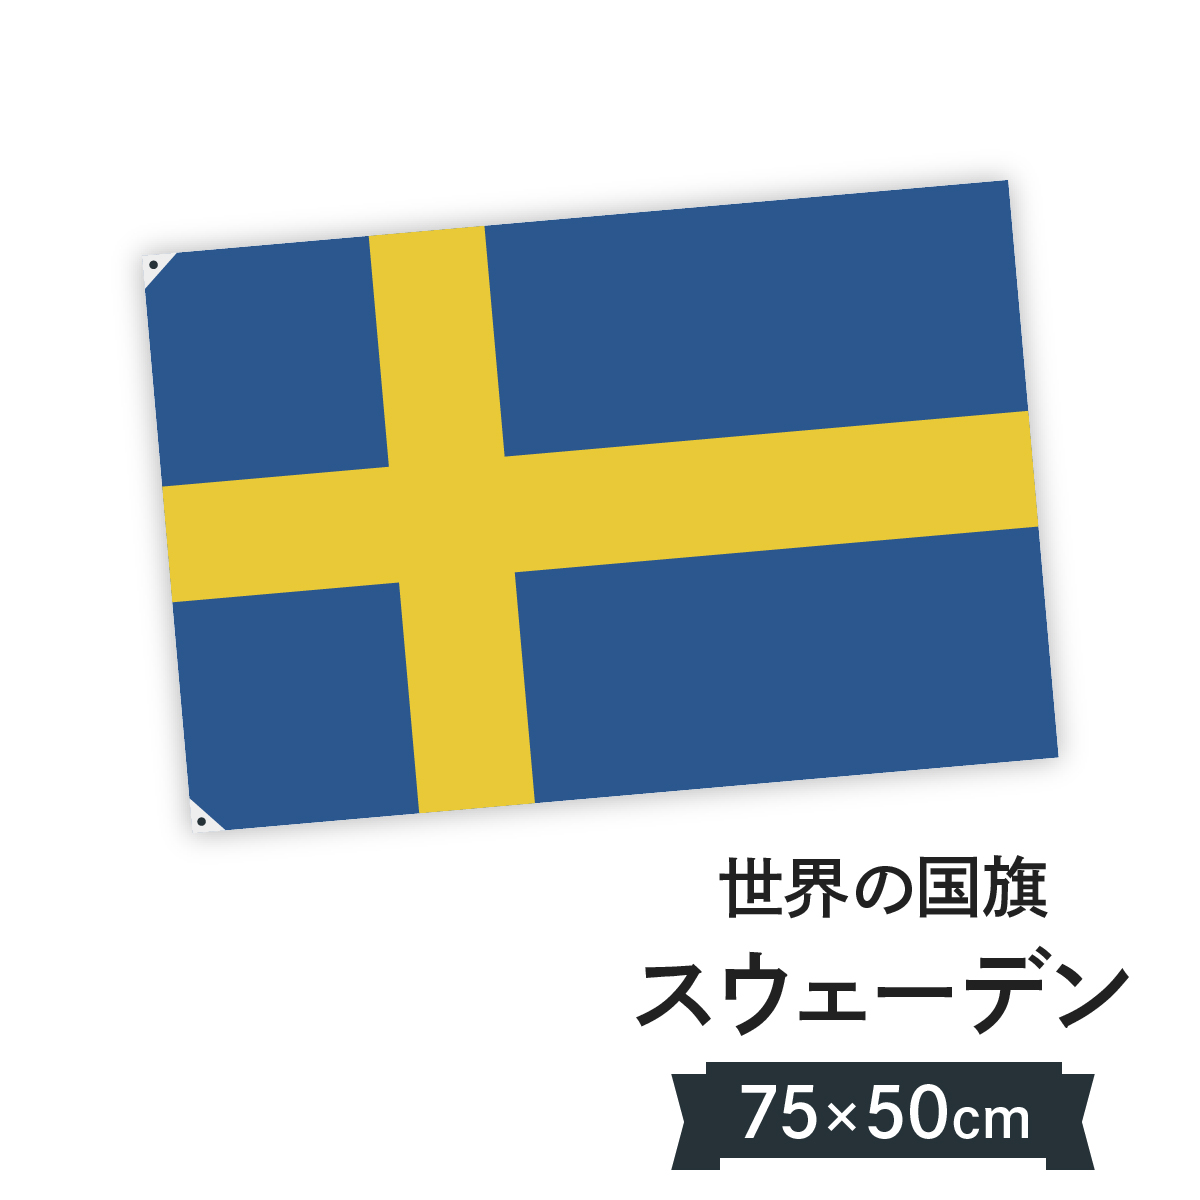 お店に飾ればお手軽異国風演出 スウェーデン王国 国旗 捧呈 売り込み W75cm H50cm